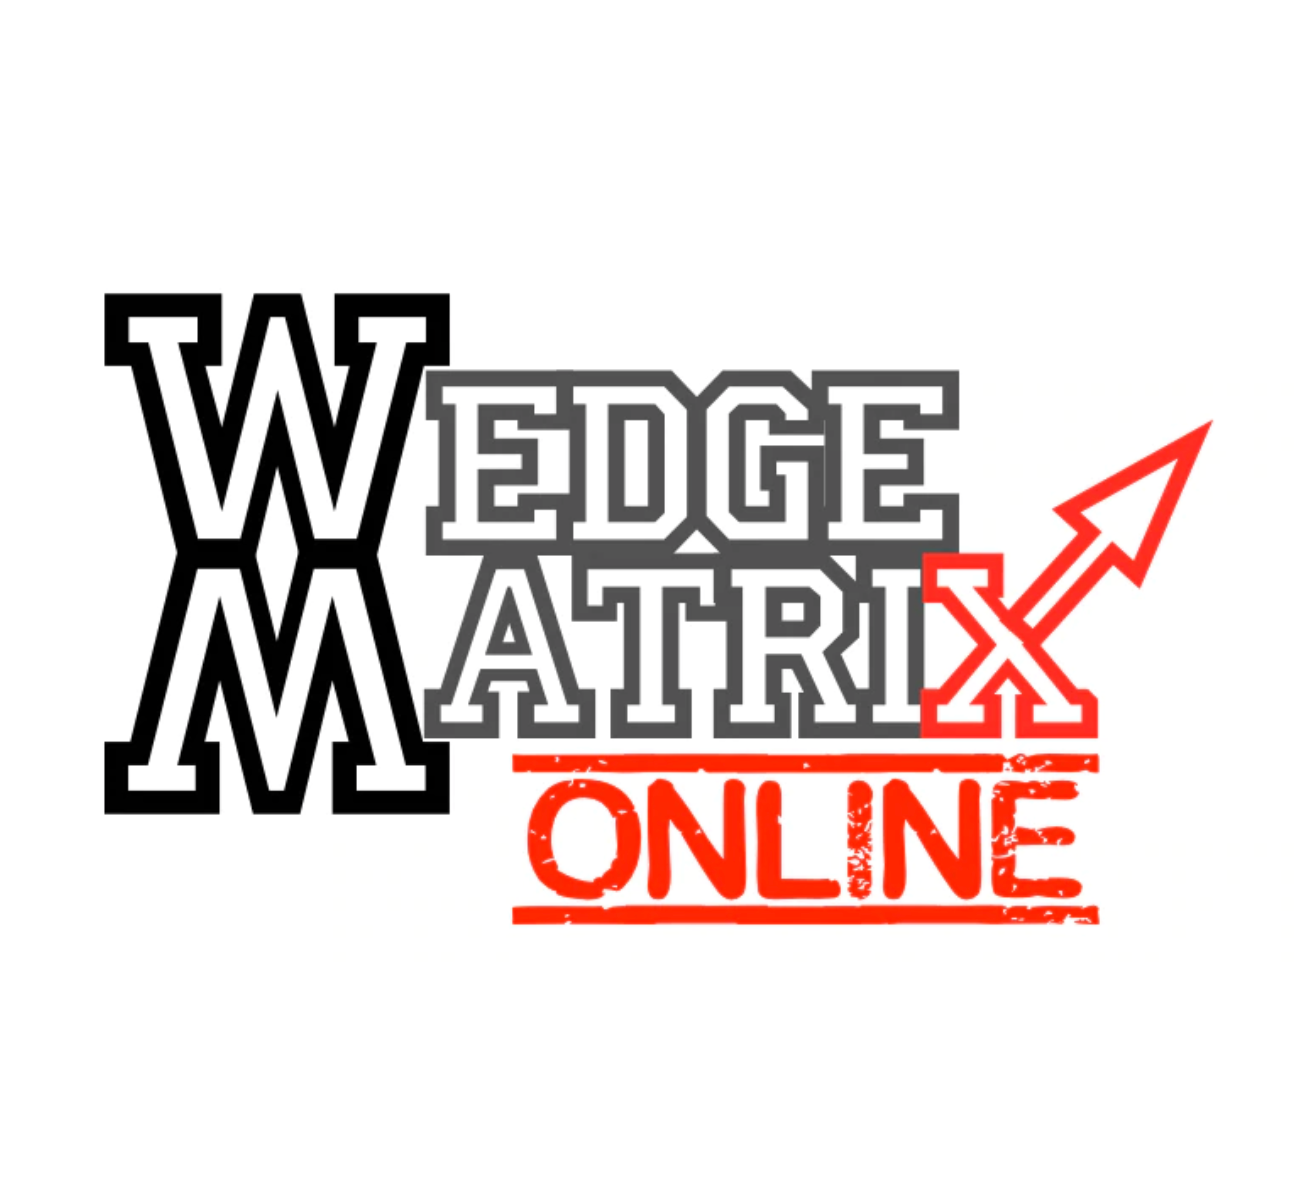 WedgeMatrix - Online Instructor Training - 2023